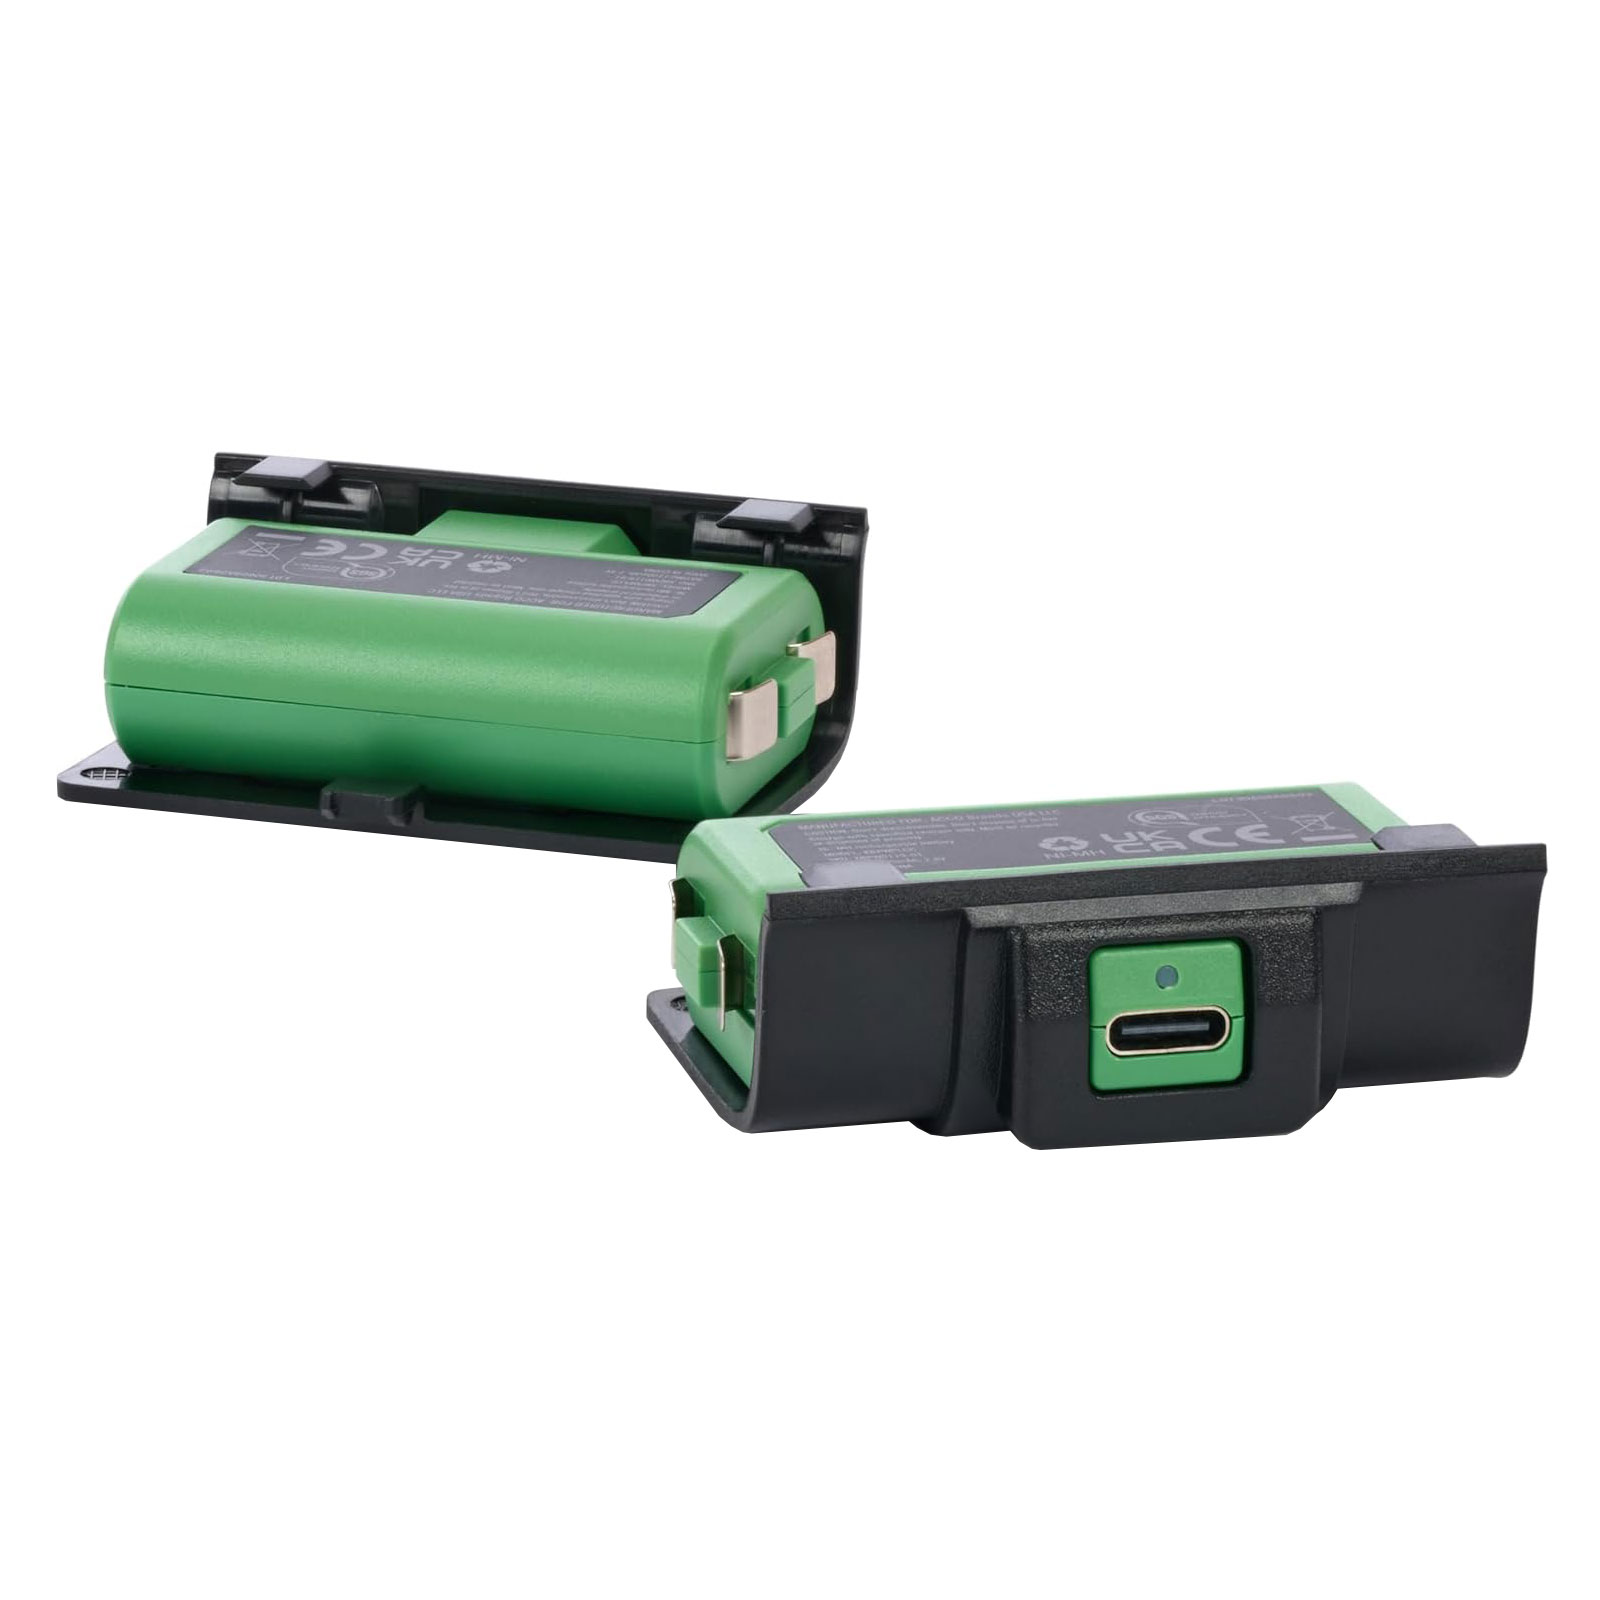 نکته خرید - قیمت روز باتری قابل شارژ دسته بازی XBOX Series X/S پاور ای مدل PowerA Play & Charge Kit مجموعه دو عددی خرید